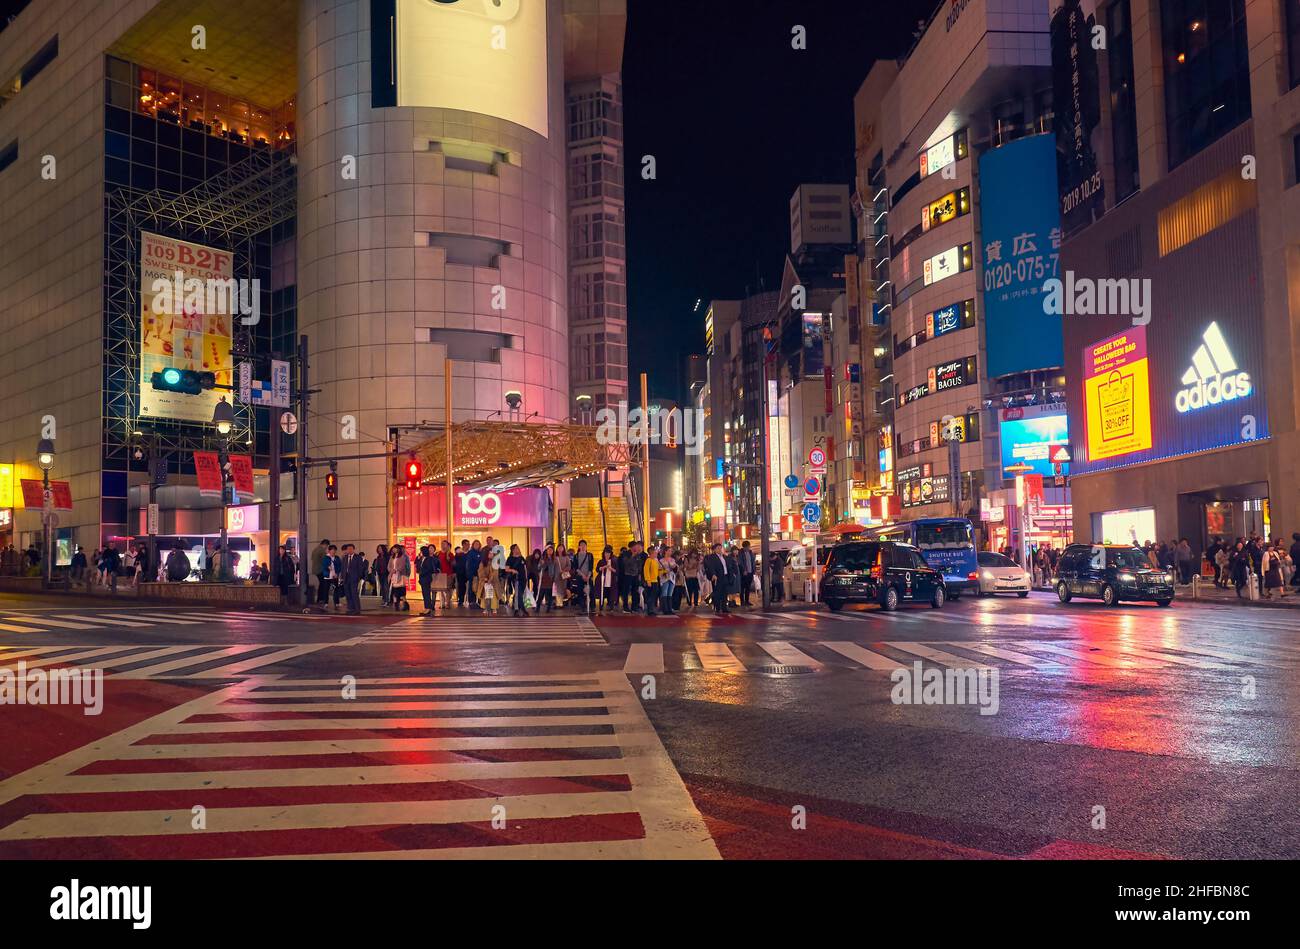 Tokio, Japan - 25. Oktober 2019: Die Nachtansicht einer der Kreuzung des Einkaufsviertels Shibuya, umgeben von hellen Werbespots und Spruchbändern. Tokio Stockfoto